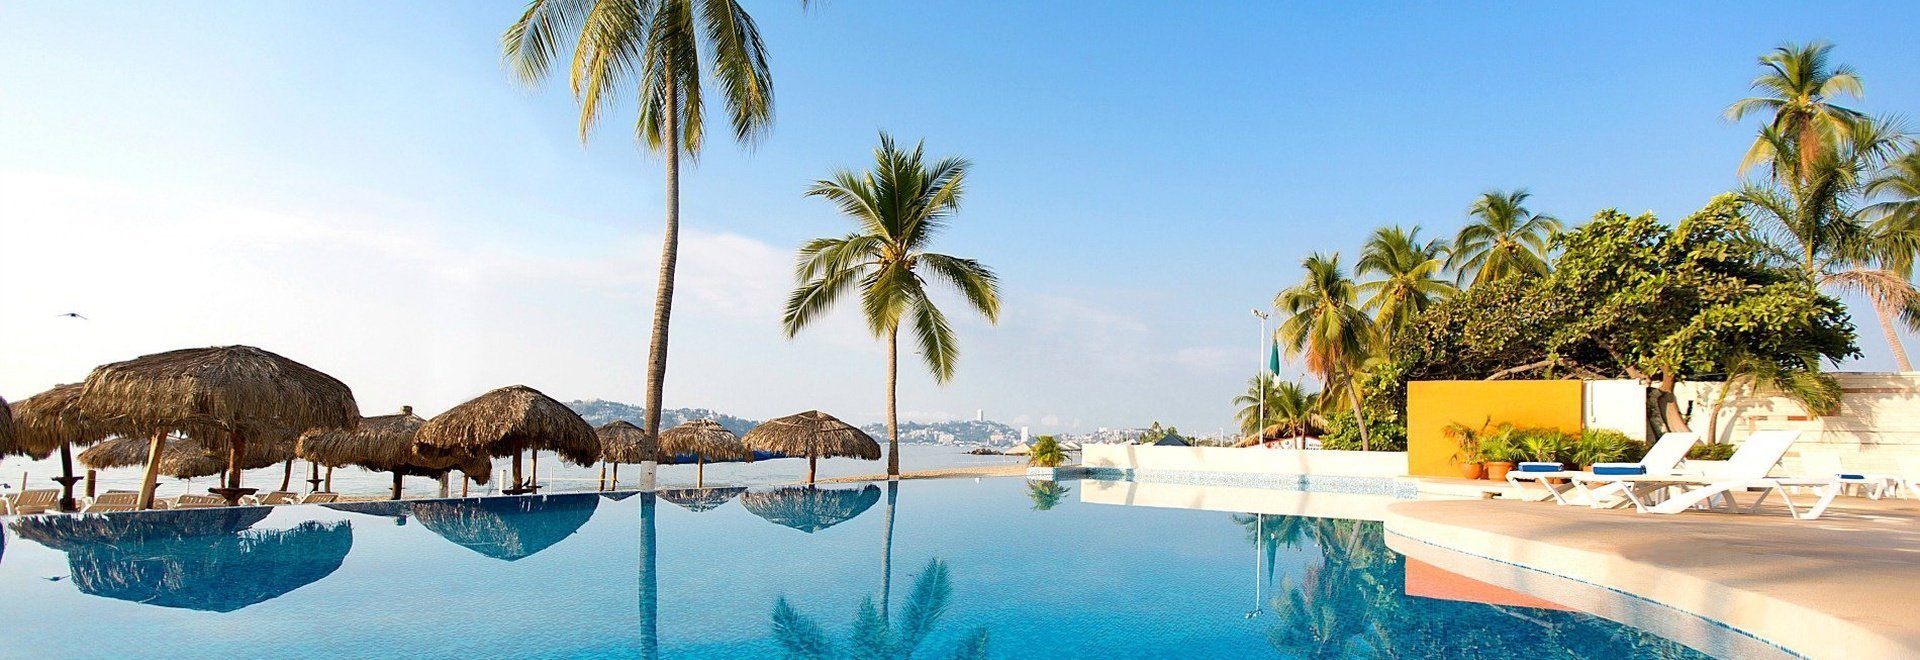 Krystal Beach Acapulco Hotel -  